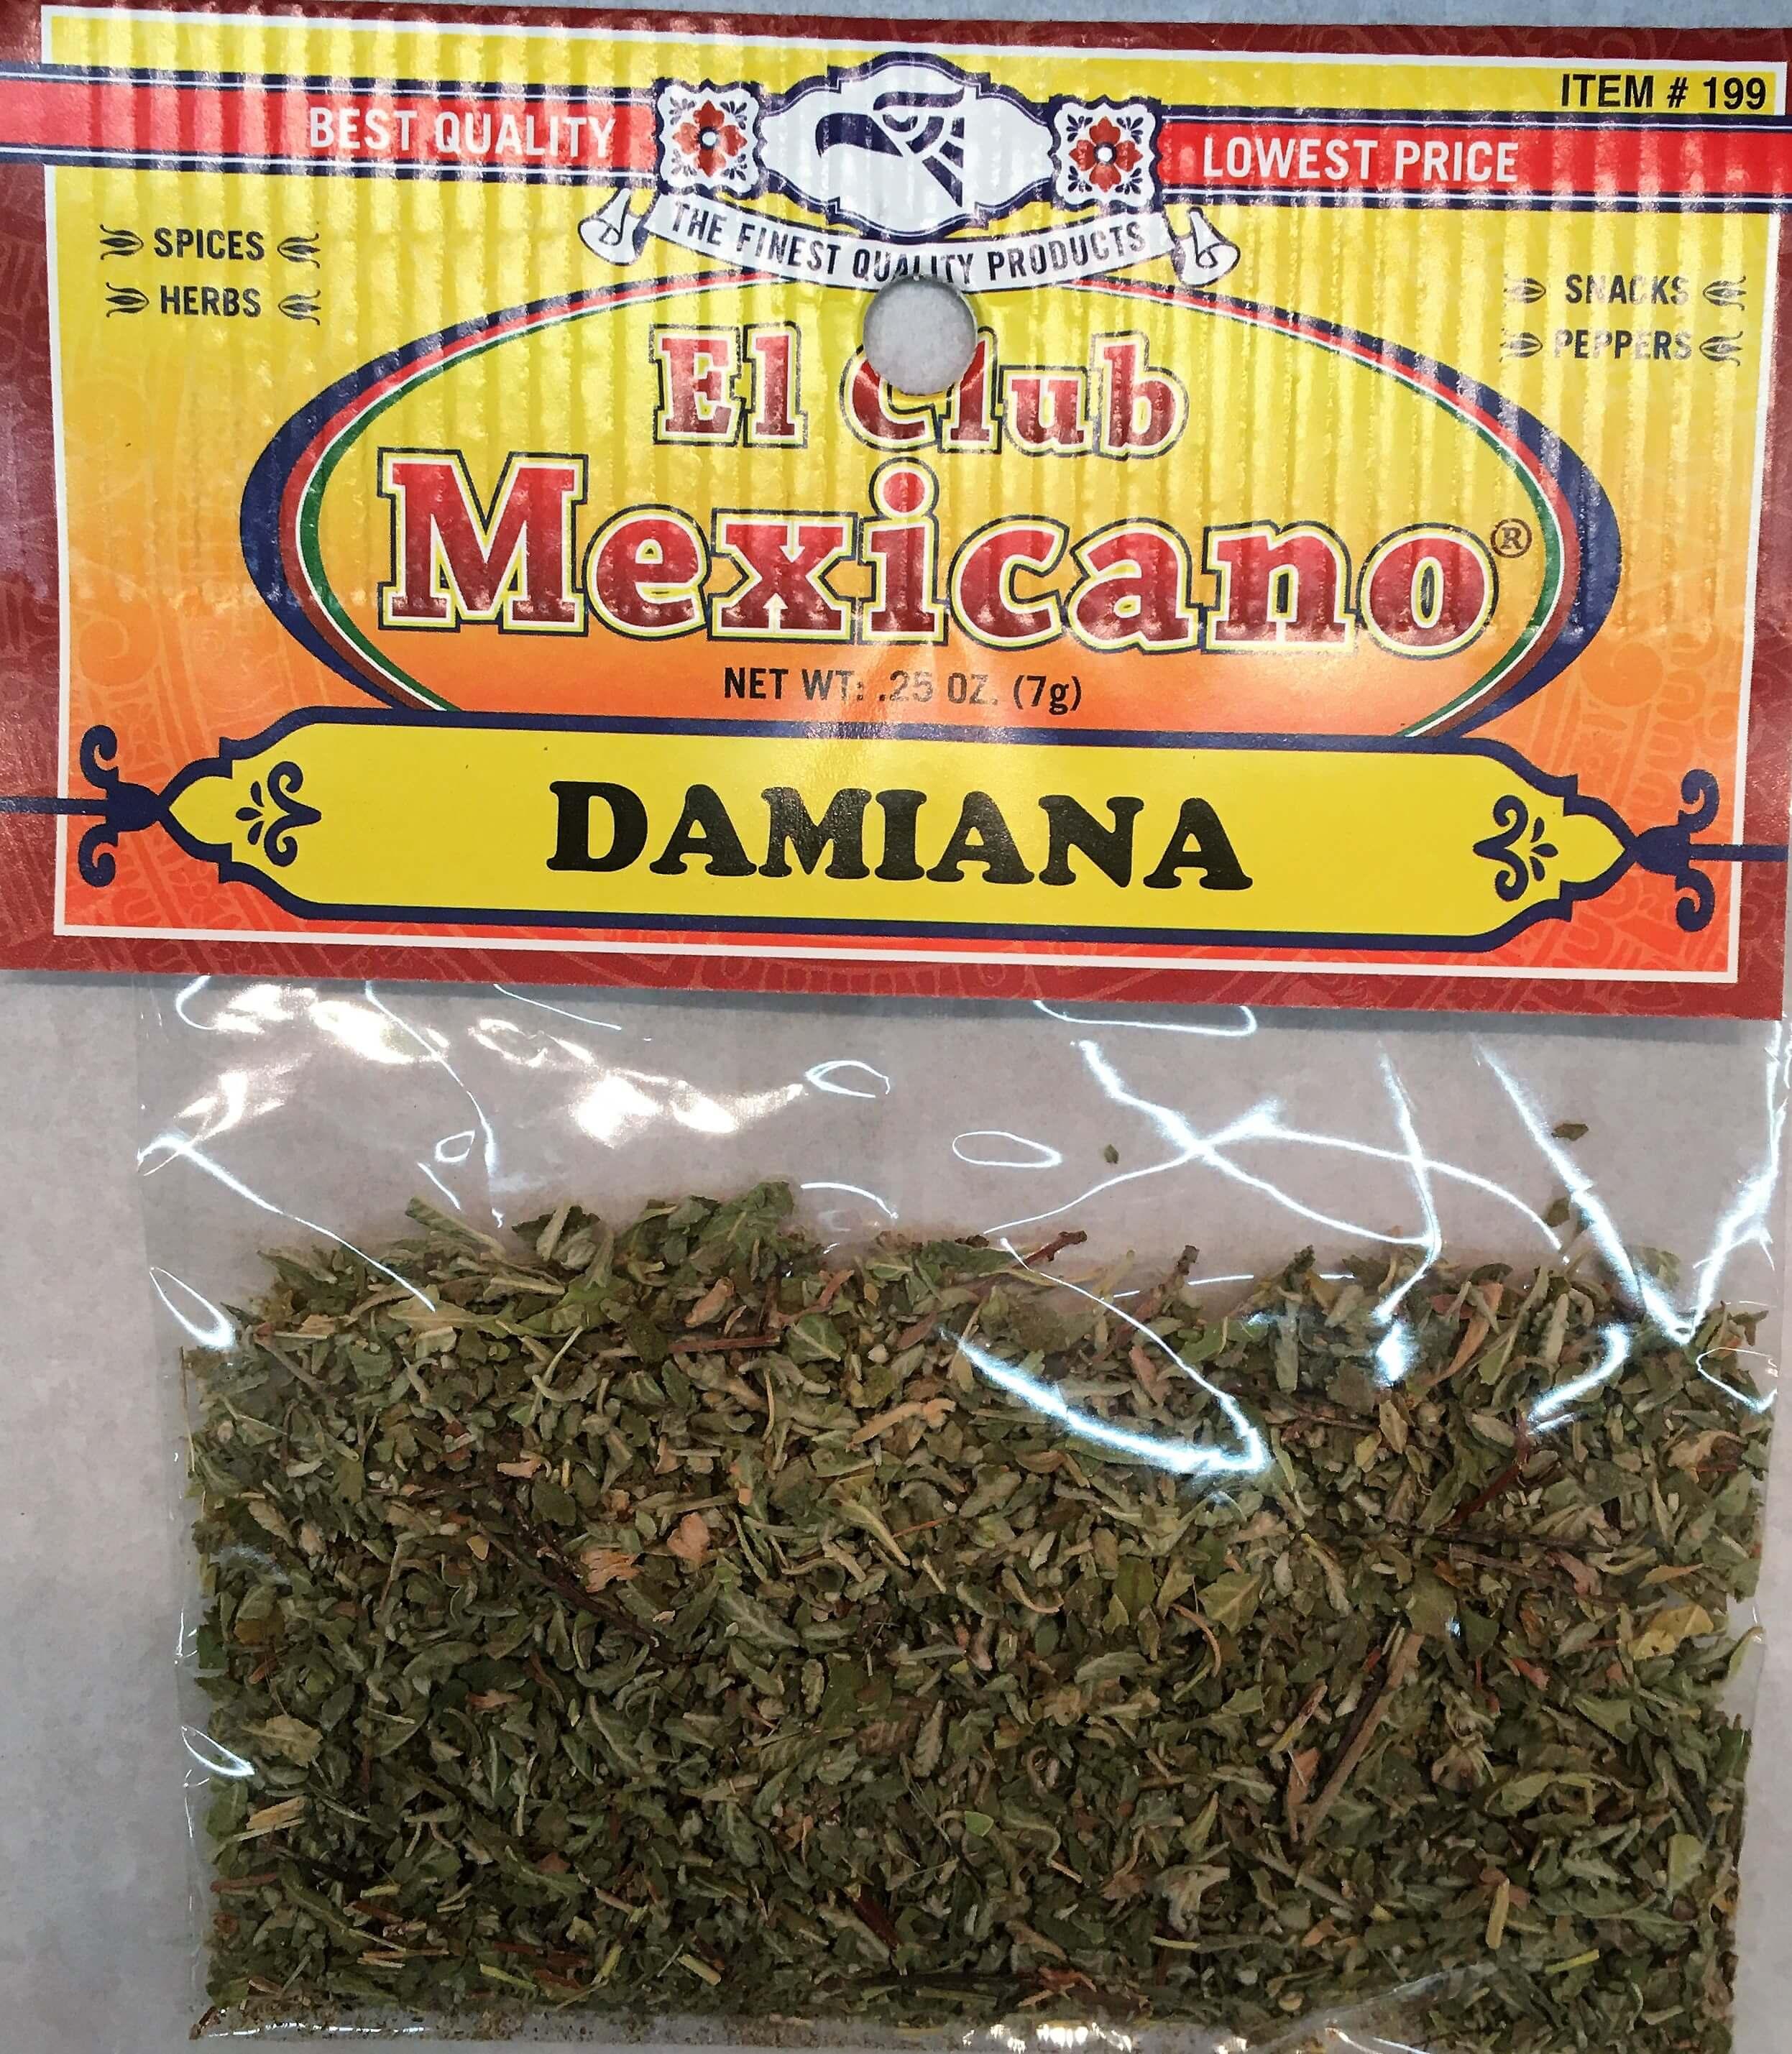 El Club Mexicano - Damiana 0.25 oz.